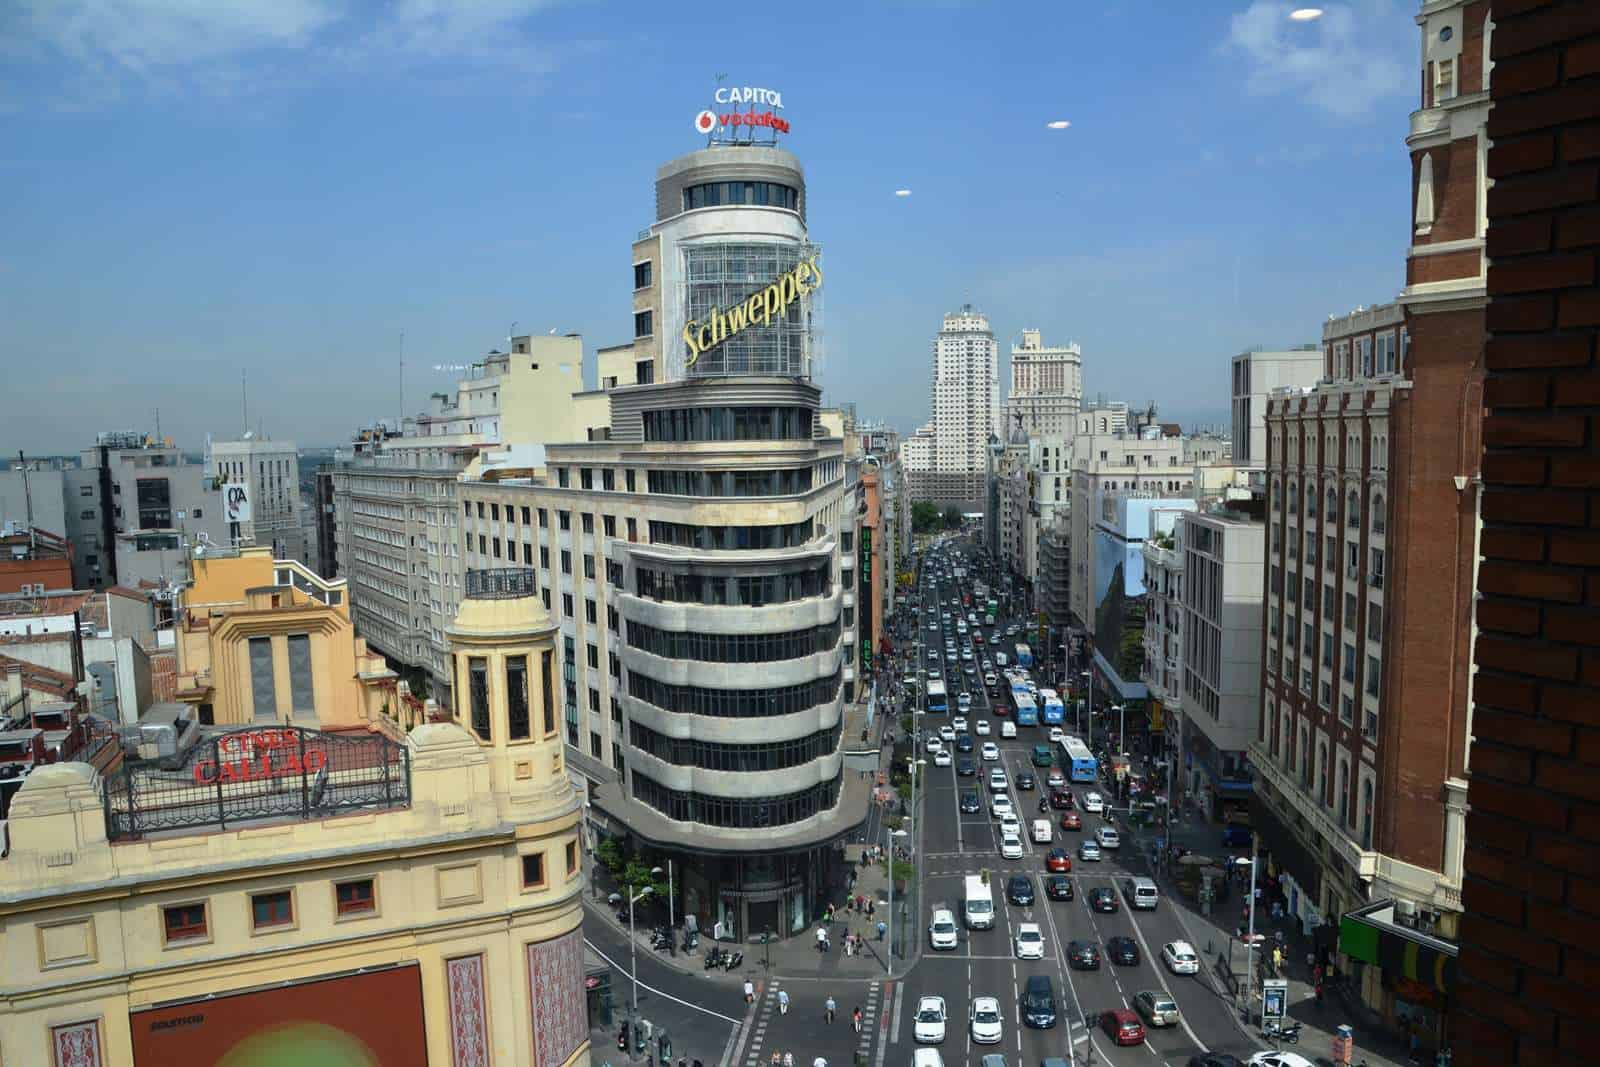 Vistas panorámicas- los mejores miradores de Madrid1..